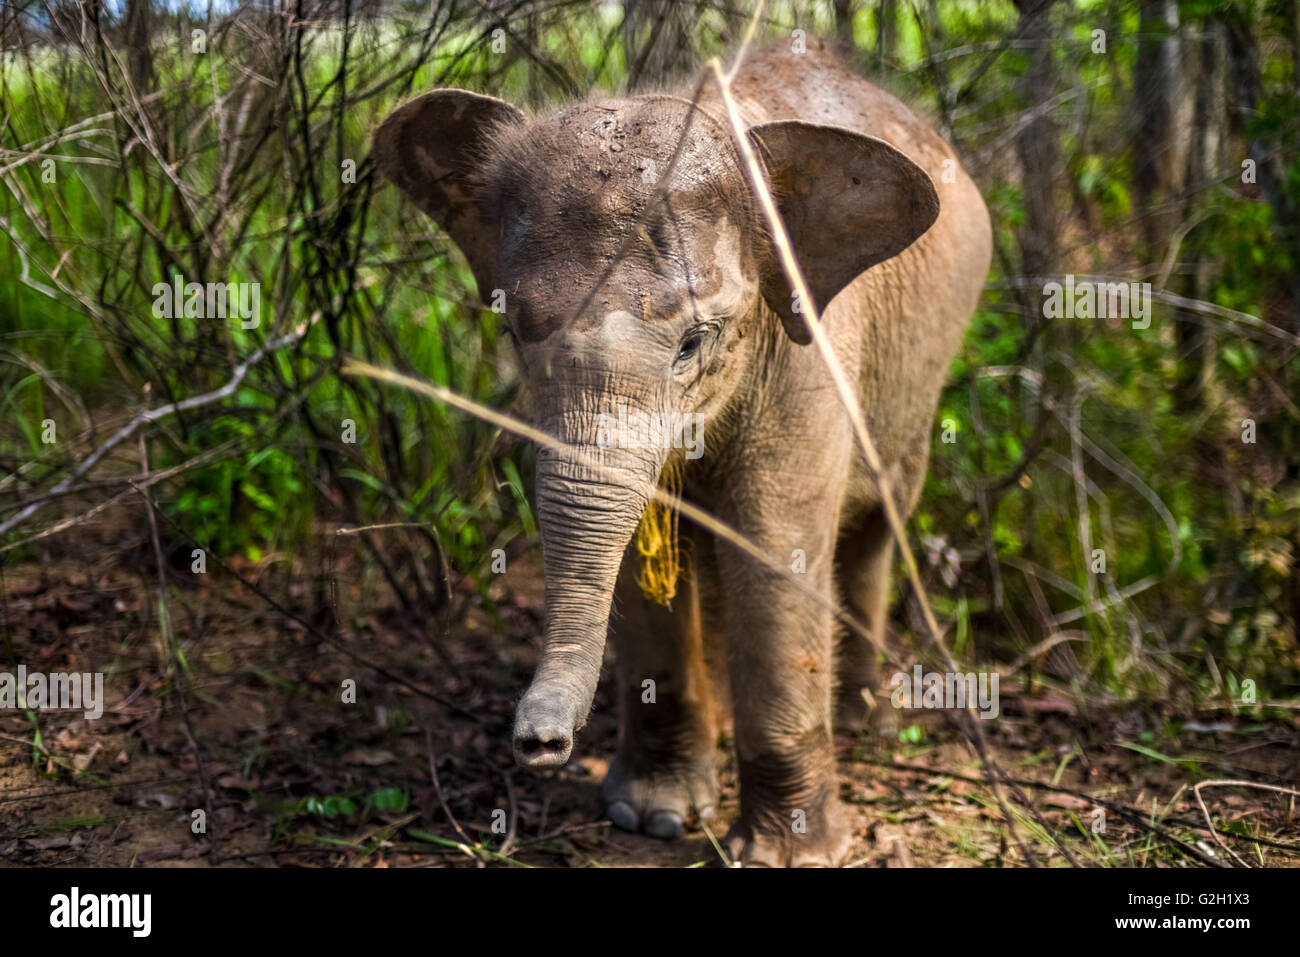 Baby sumatran elephant in the bushes. Way Kambas National Park, Sumatra, Indonesia. Stock Photo